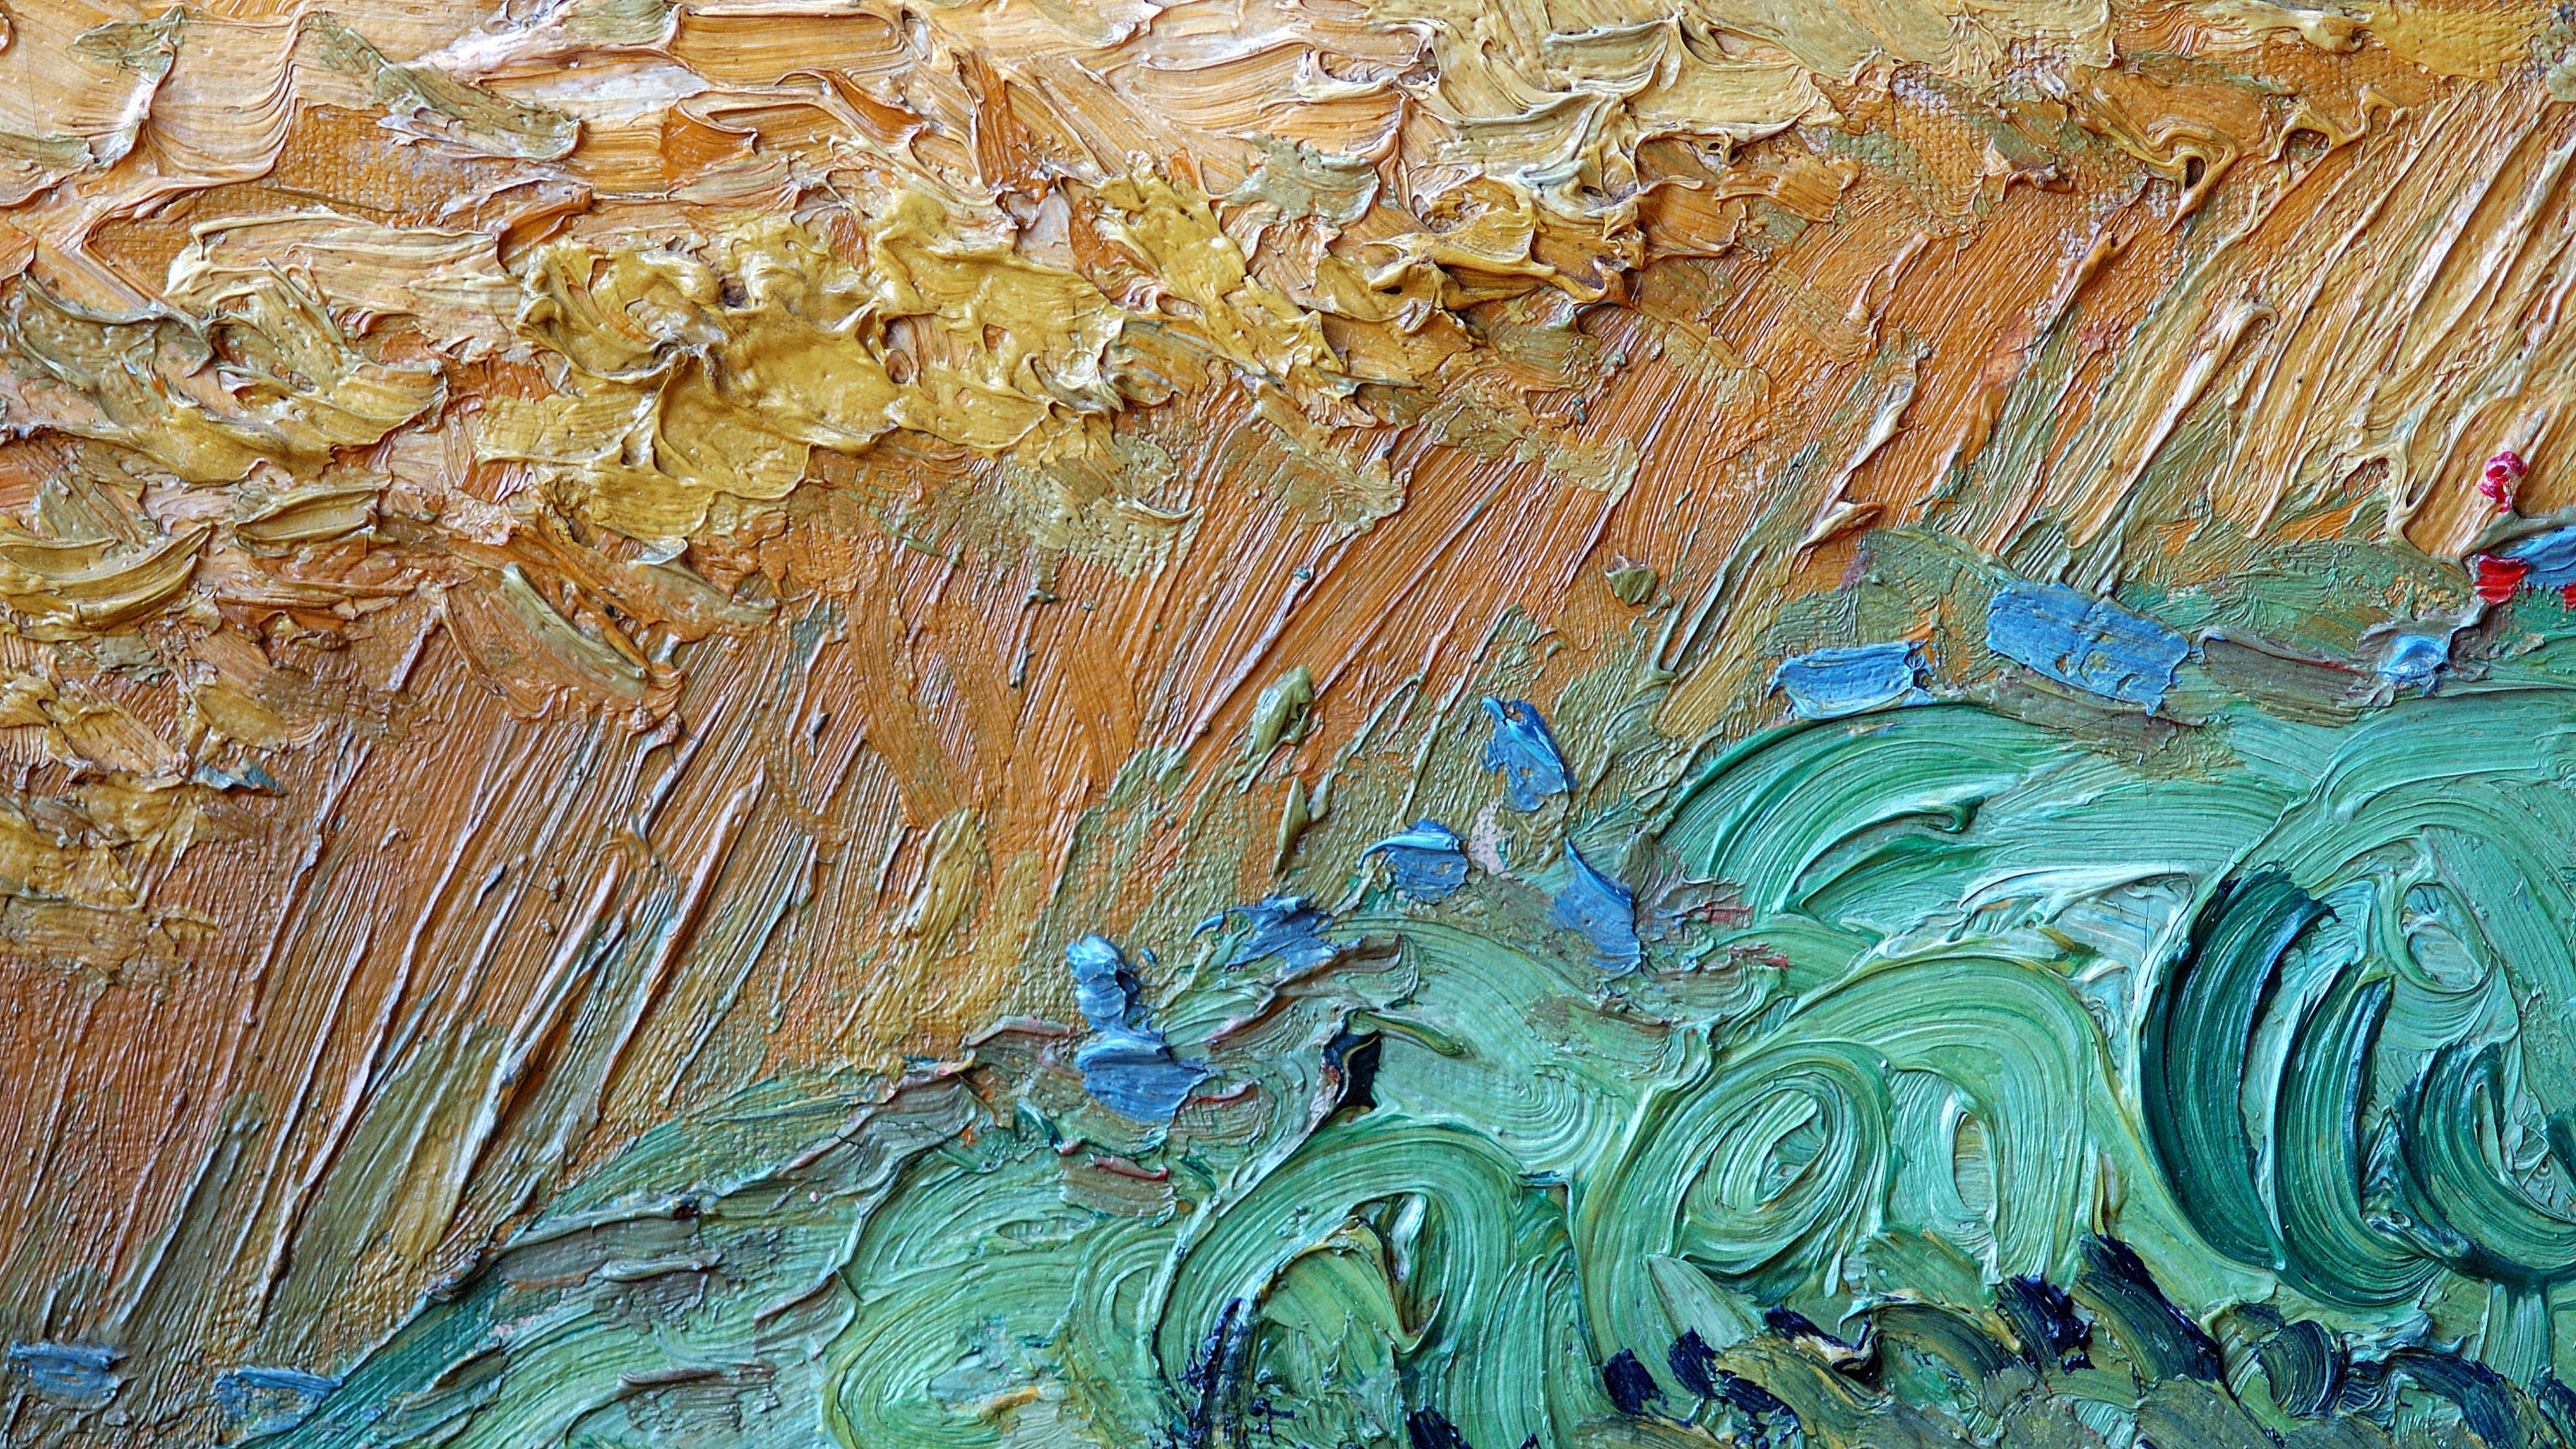 Hình nền 3840x2160 của Vincent Van Gogh, tuyệt đẹp hùng vĩ và sống động tạo nên cảm giác như đang lạc vào một thế giới hoàn toàn khác. Khung cảnh đẹp như tranh với cánh đồng lúa rực rỡ màu sắc, bạn sẽ cảm thấy thật tuyệt vời khi sử dụng hình nền này.